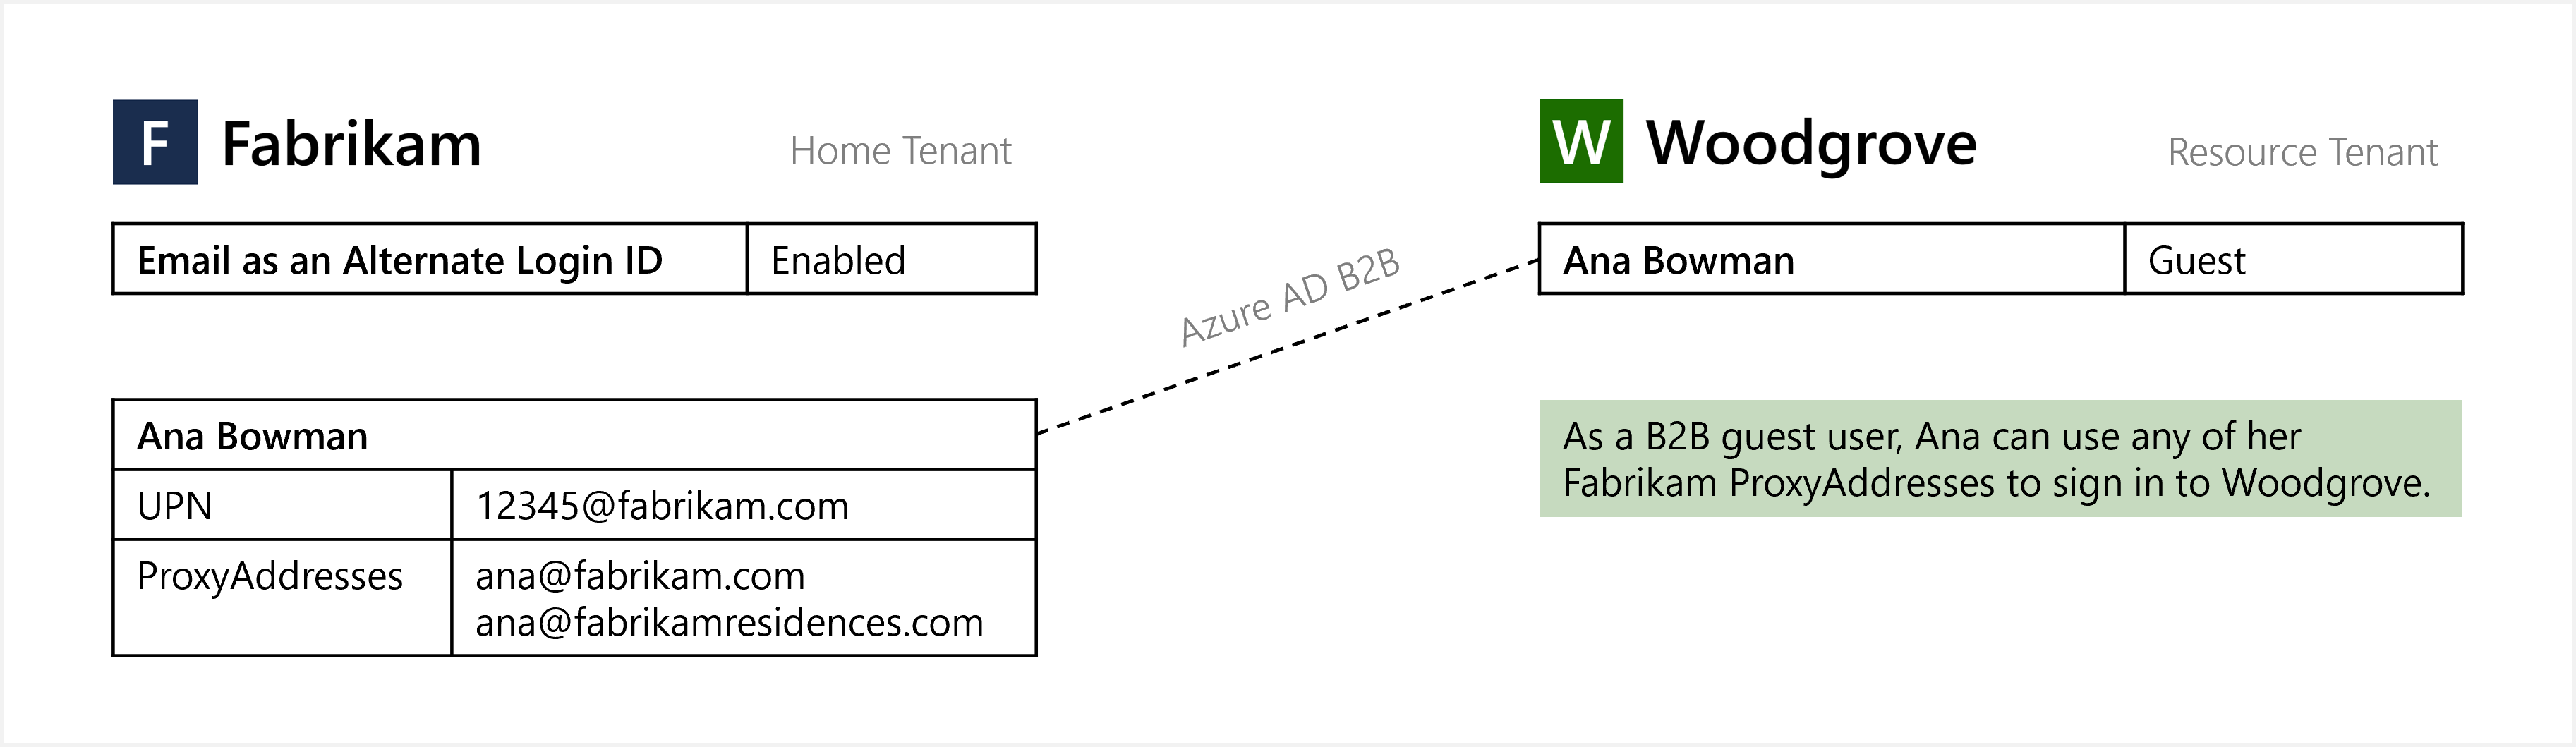 Diagramme de l’e-mail utilisé en tant qu’ID de connexion de substitution pour la connexion B2B des utilisateurs invités.